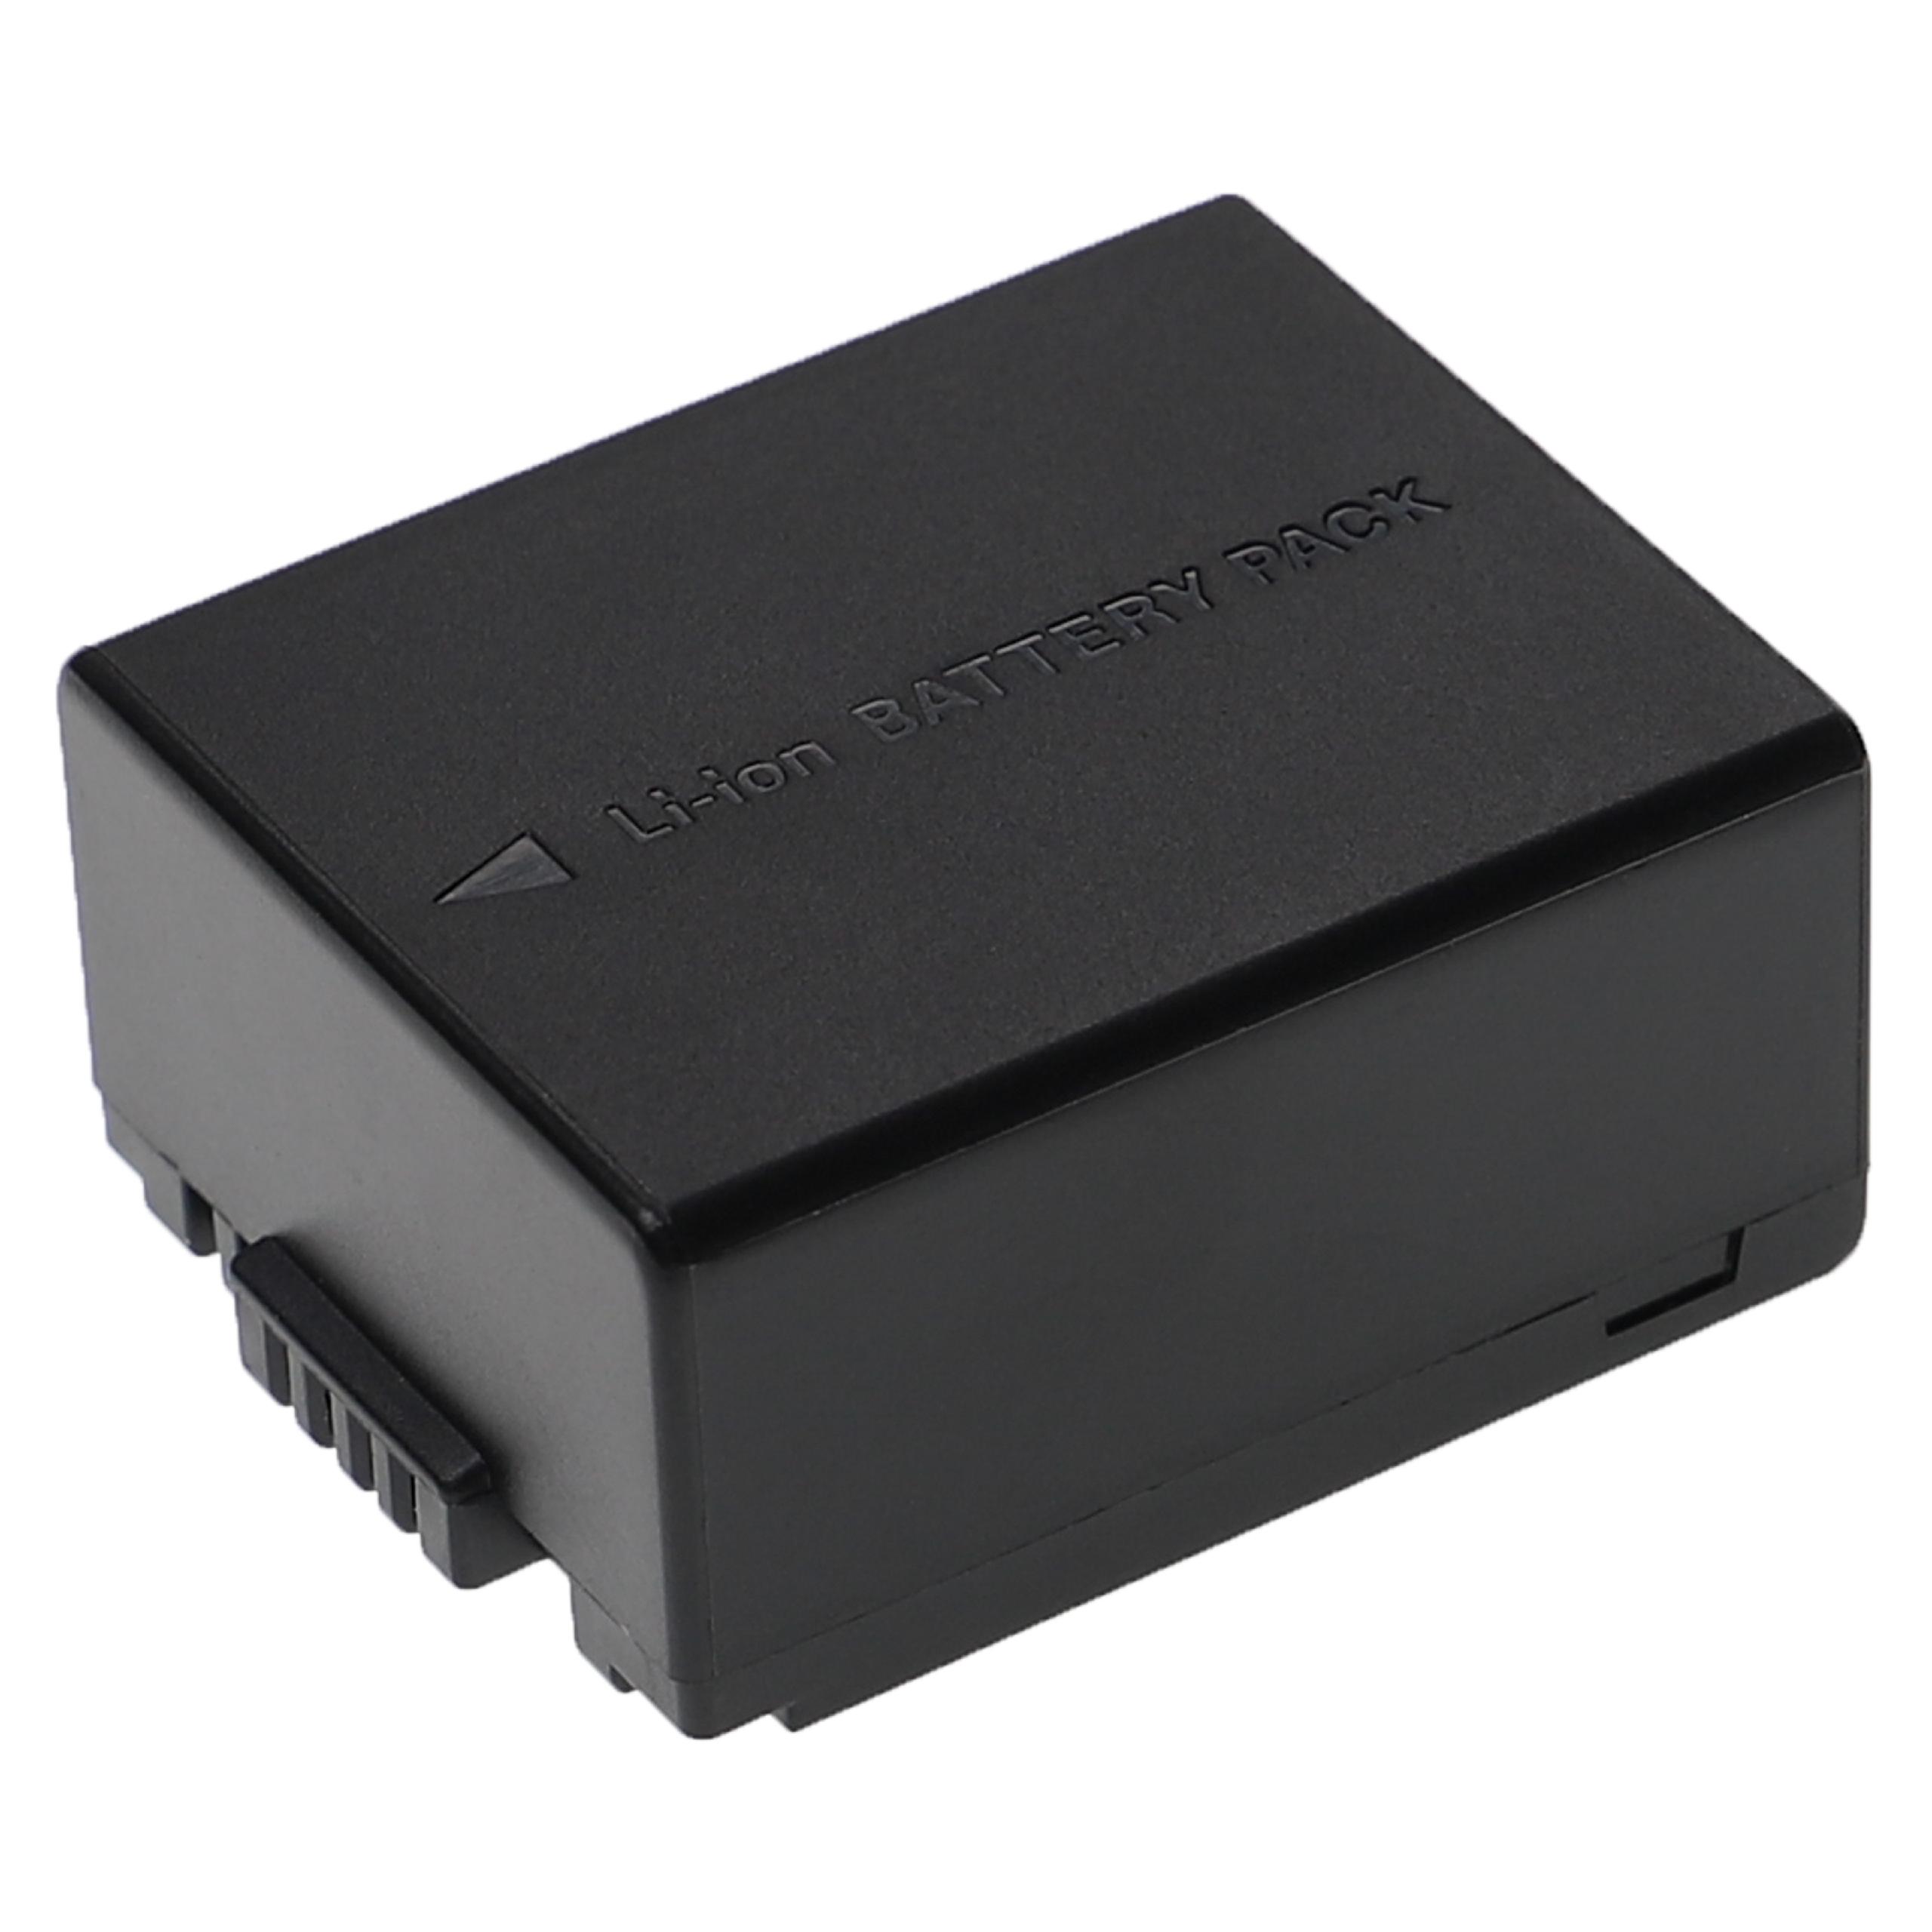 Batterie remplace Panasonic DMW-BLB13, DMW-BLB13E, DMW-BLB13GK pour appareil photo - 1250mAh 7,4V Li-ion